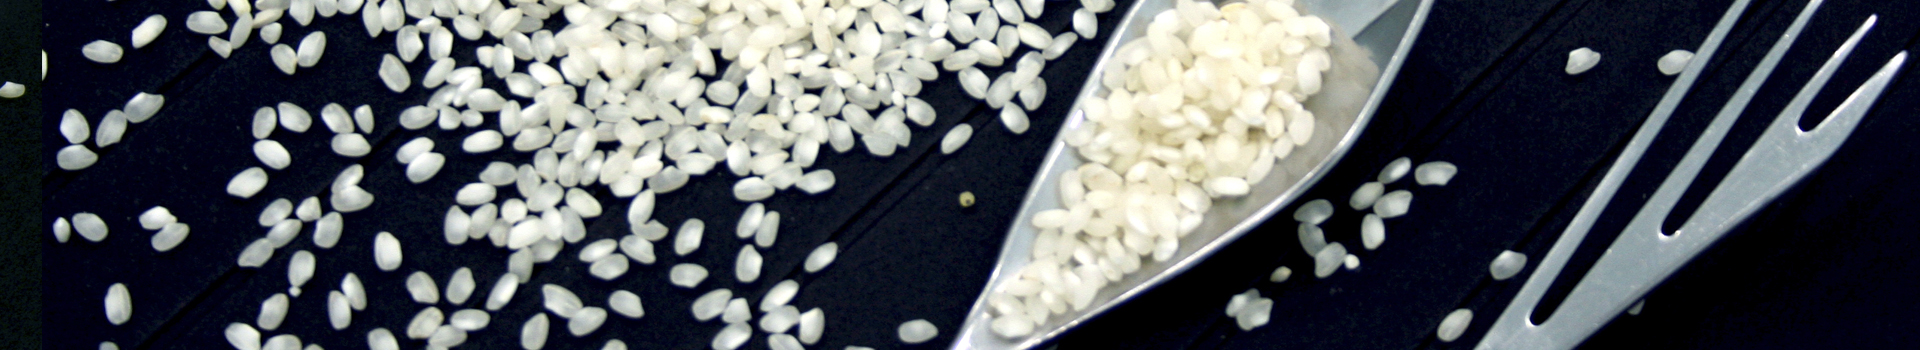 ABC Rice, arroz de calidad para profesionales